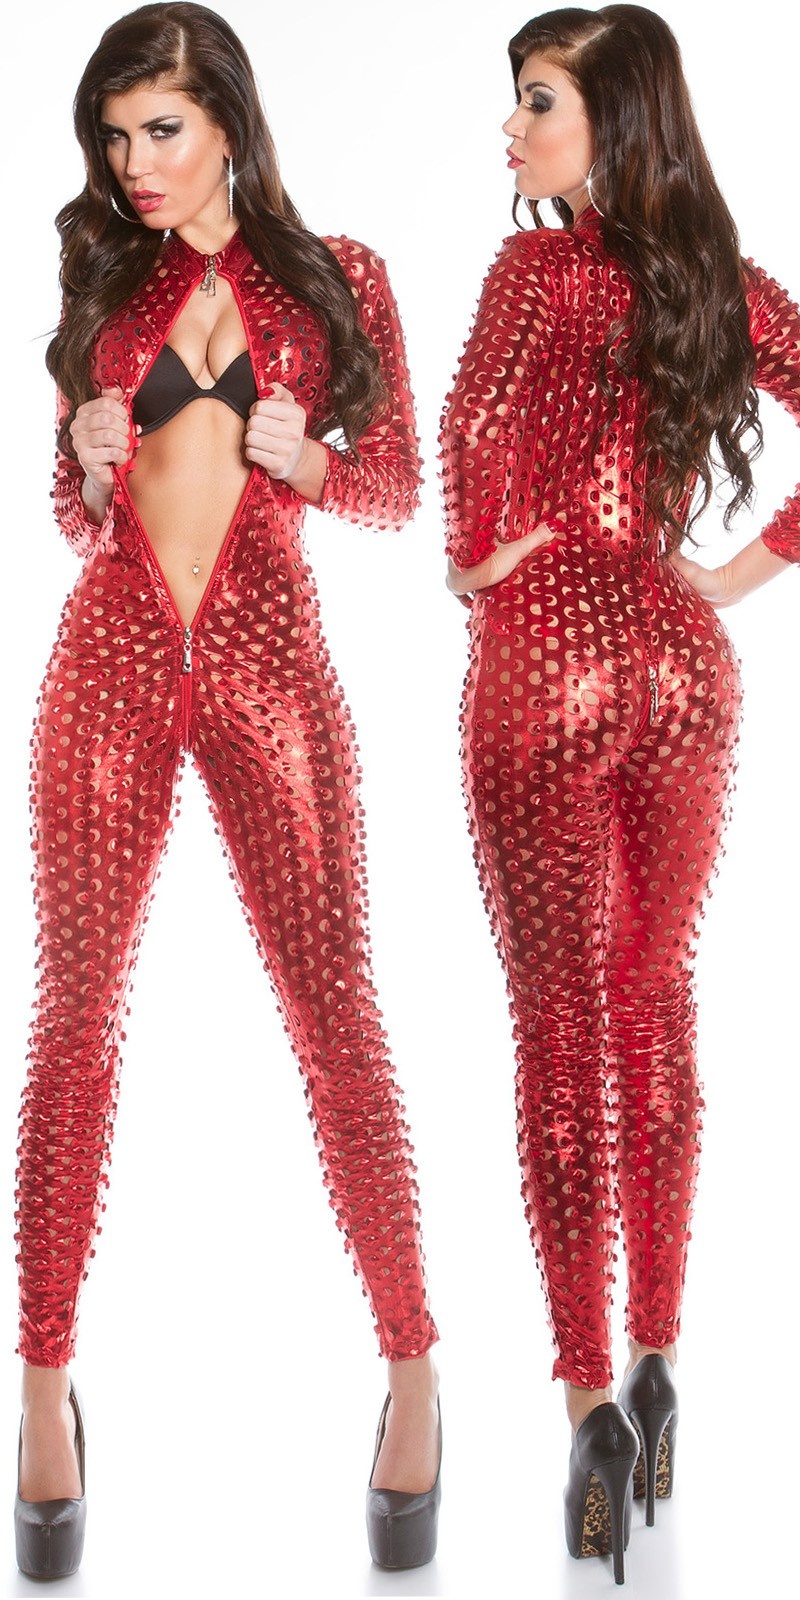 Sexy wetlook katsuit met 2weg ritssluiting rood